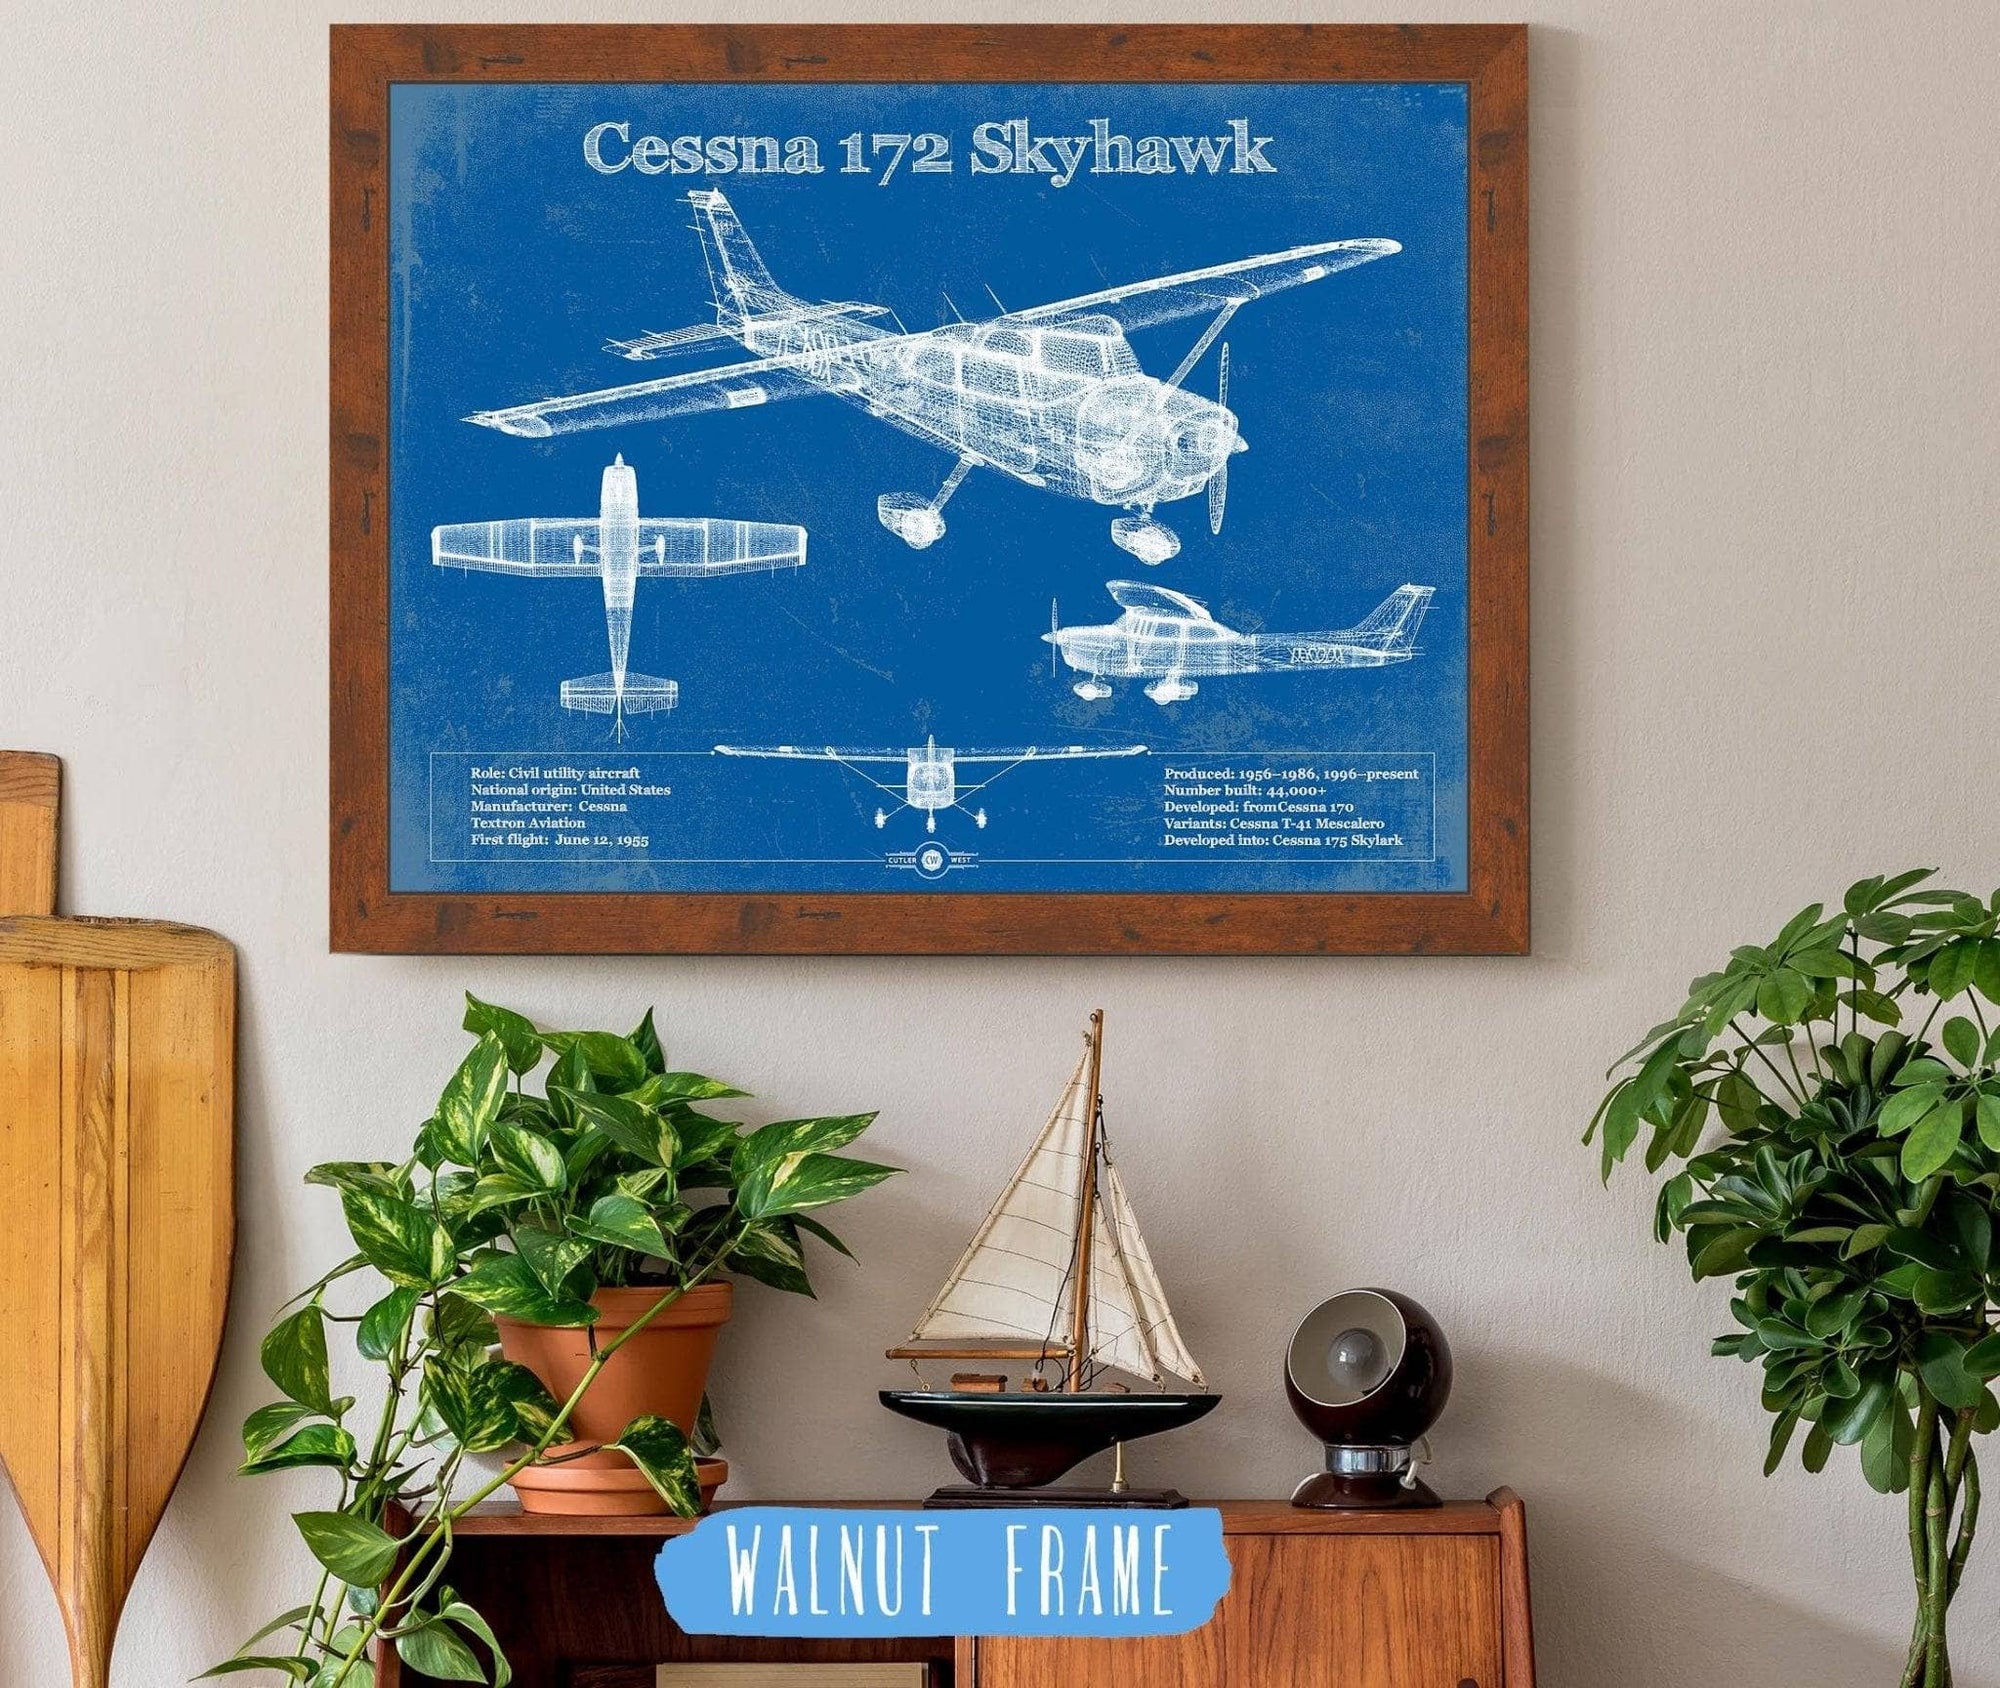 Cutler West Cessna Collection 14" x 11" / Walnut Frame Cessna 172 Skyhawk Original Blueprint Art 933350116_21697